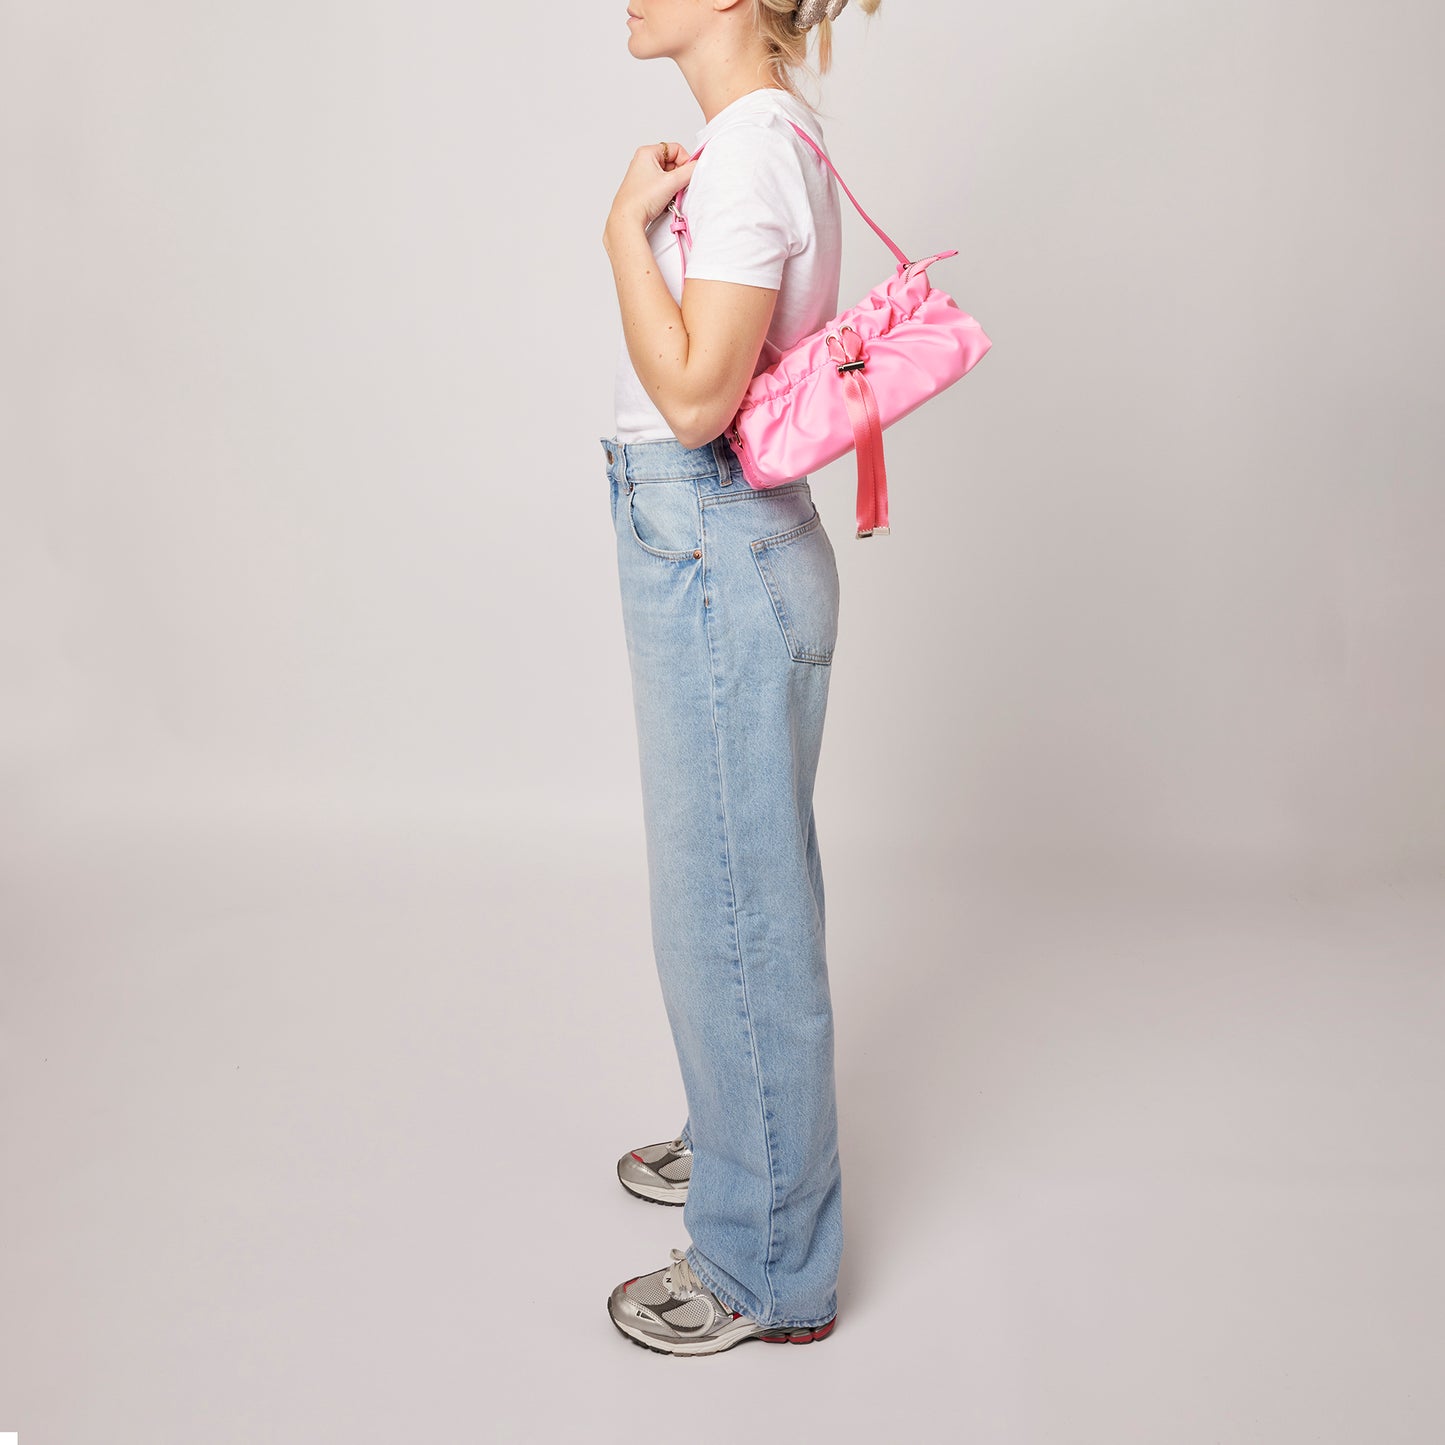 Núnoo Veneda Recycled Nylon pink Shoulder bags